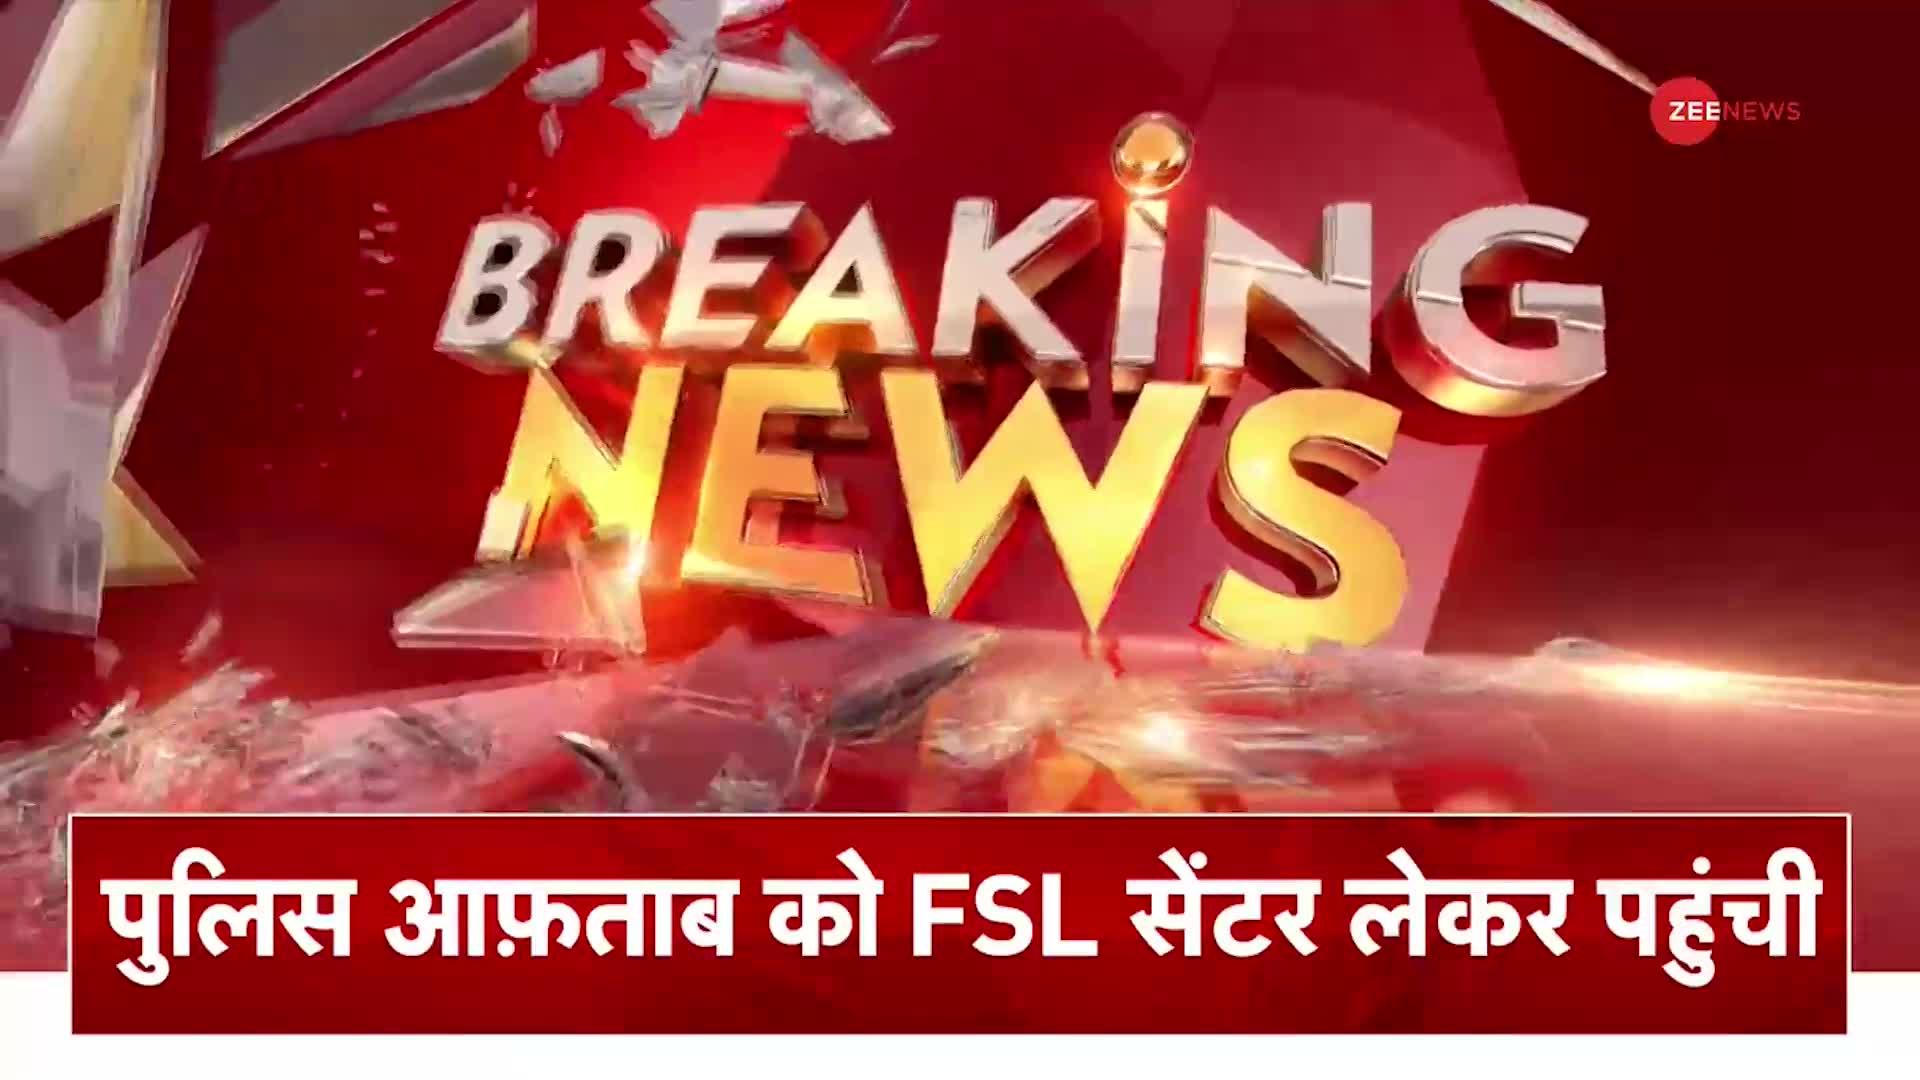 Shraddha Murder Case: आफताब को FSL सेंटर लेकर पहुंची पुलिस, आज पॉलीग्राफ टेस्ट संभव